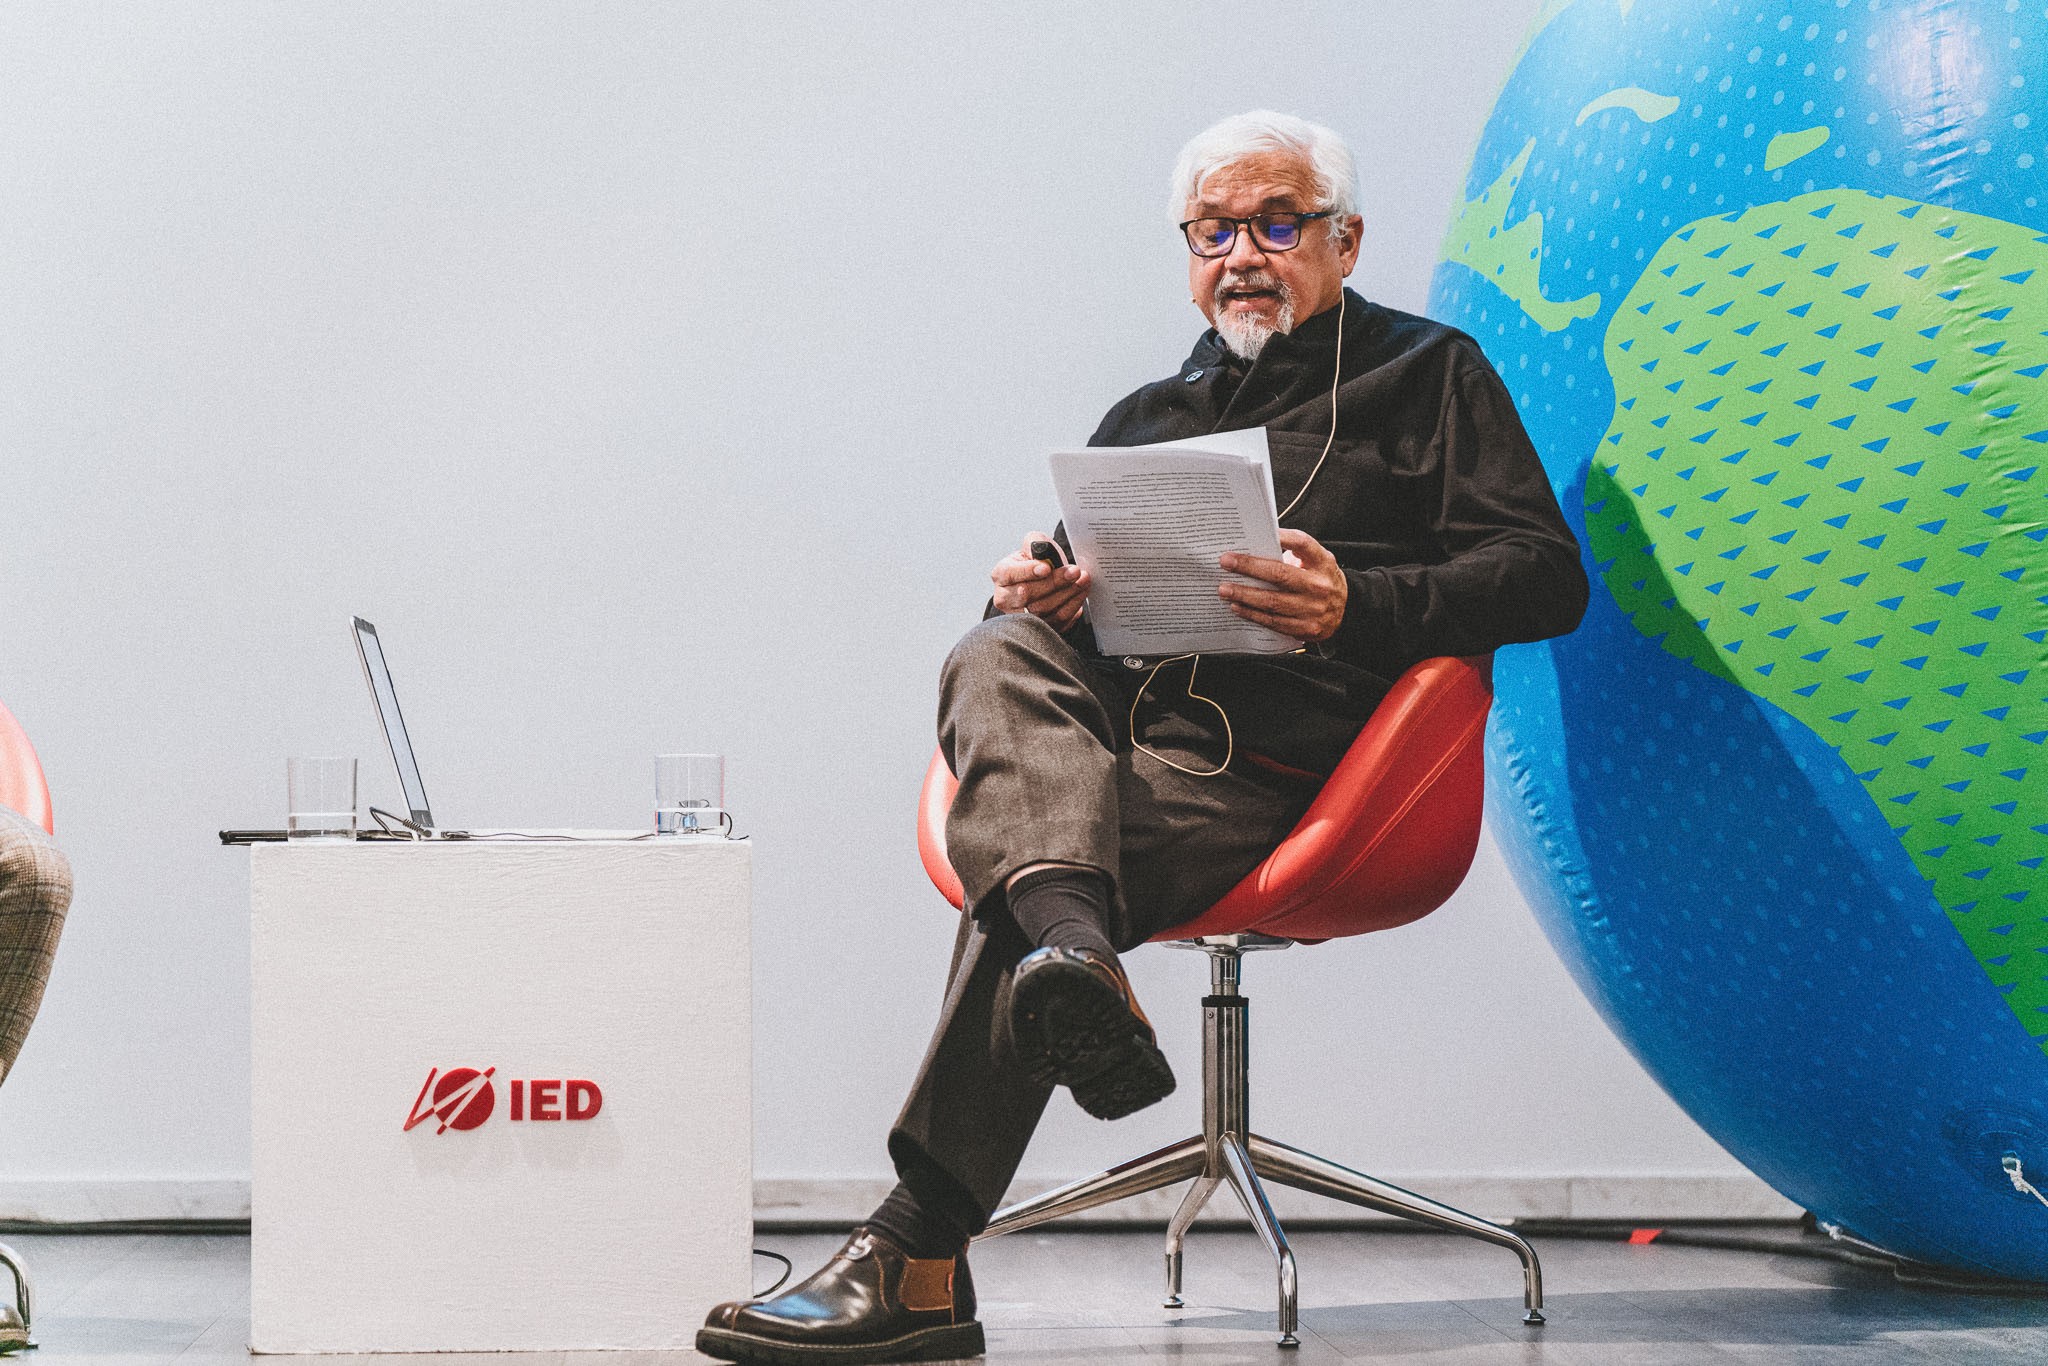 More Than Monday – storie di ispirazione: Amitav Ghosh inaugura l’anno accademico Ied con una lectio magistralis